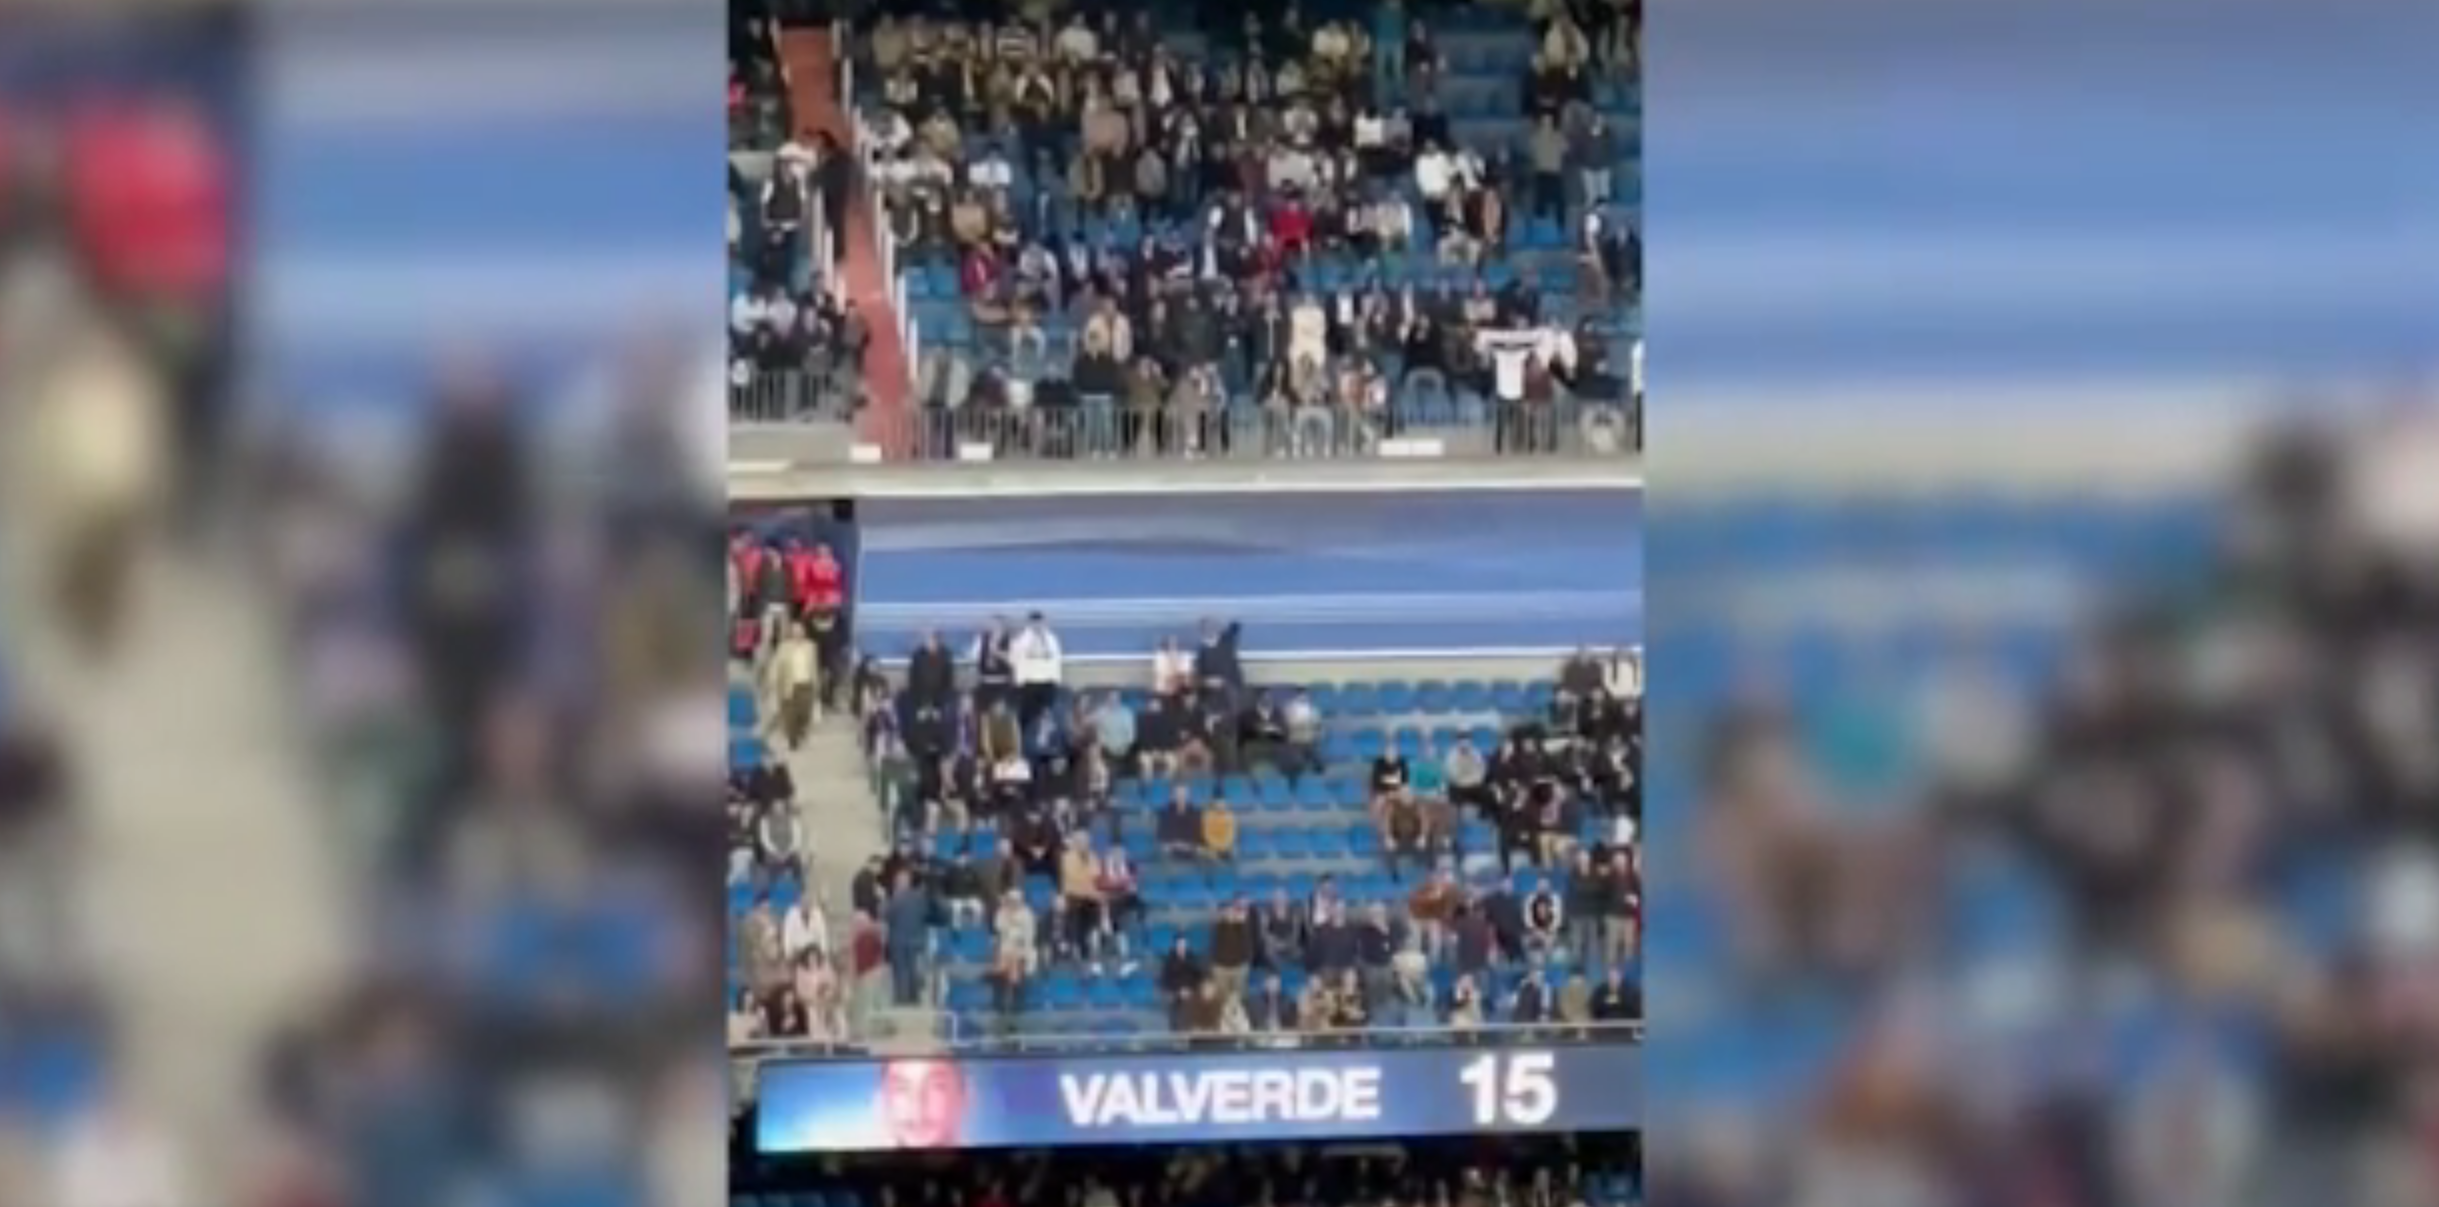 Había expectación y no defraudó: la reacción del Bernabéu cuando sonó el nombre de Valverde